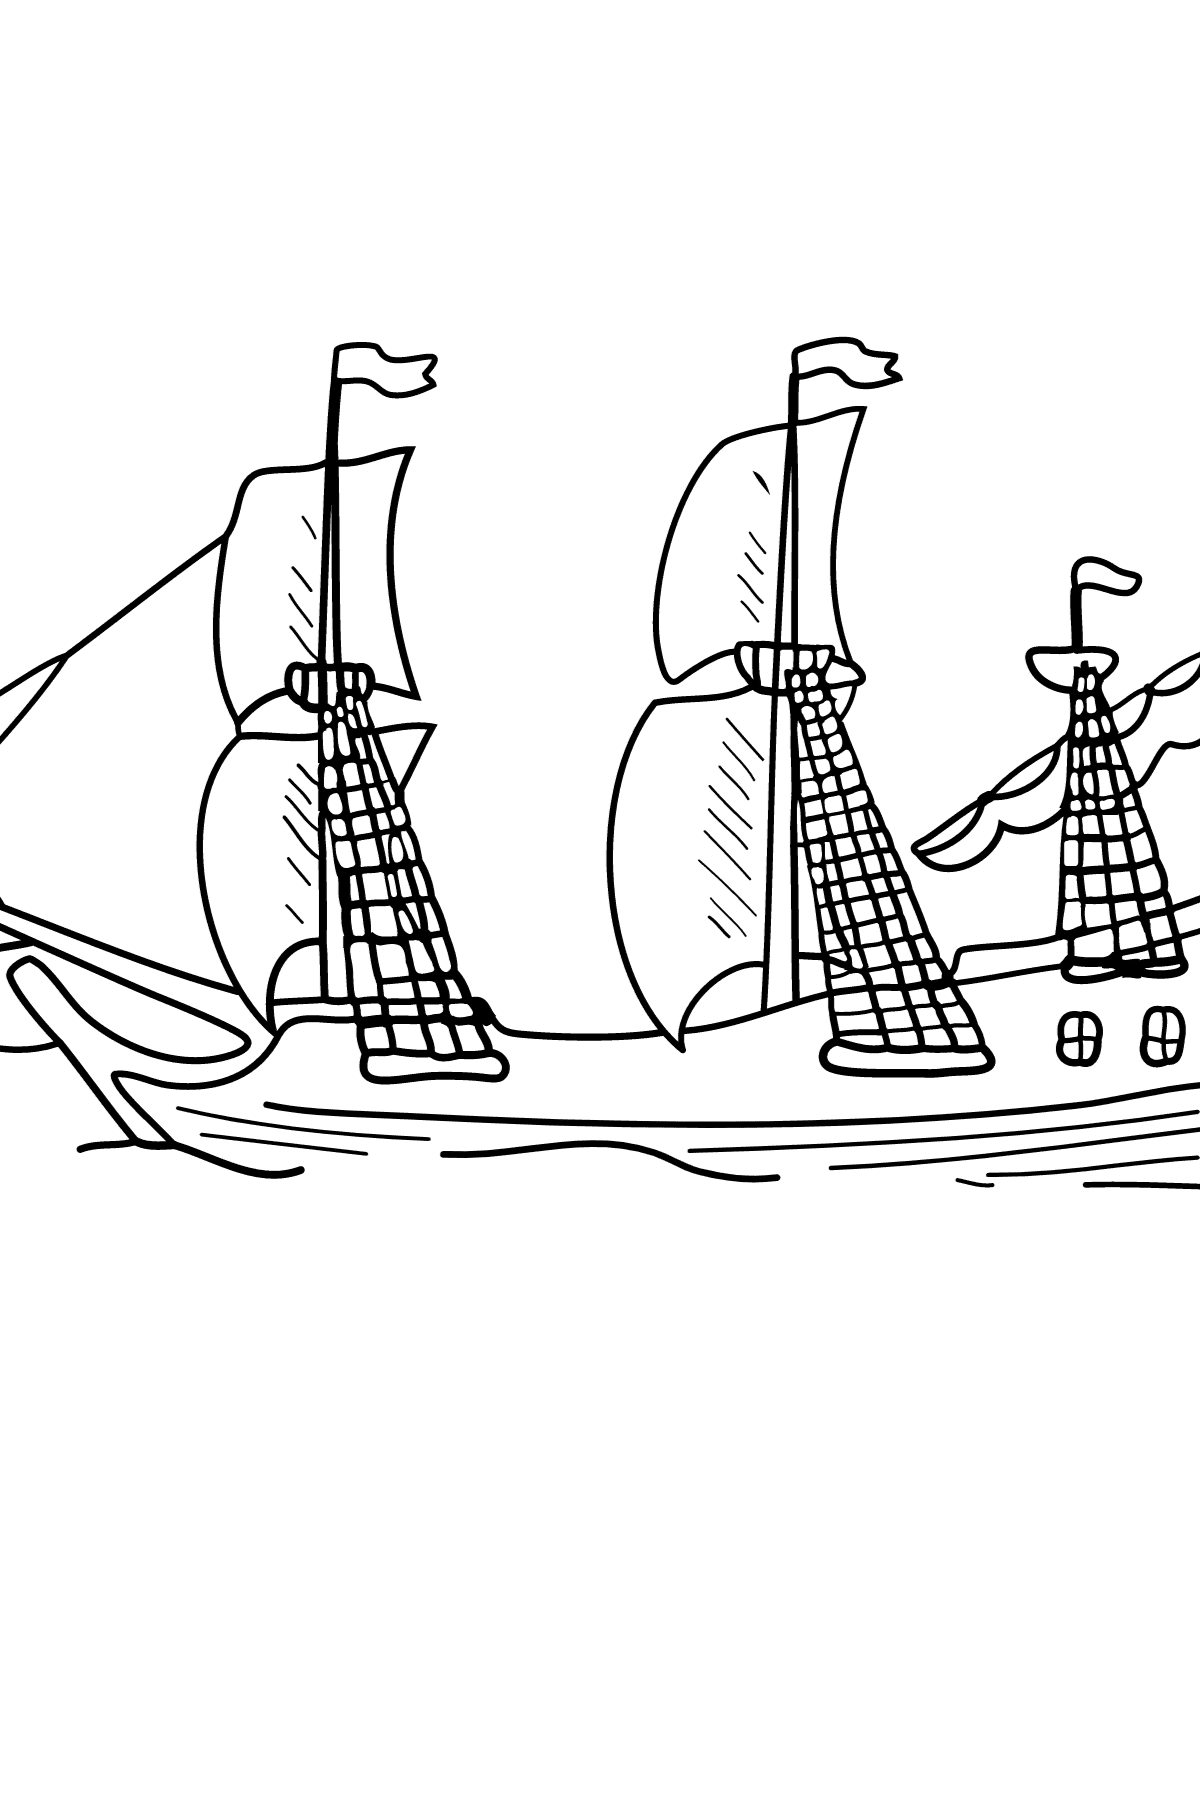 Tegning til fargelegging seilbåt - Tegninger til fargelegging for barn